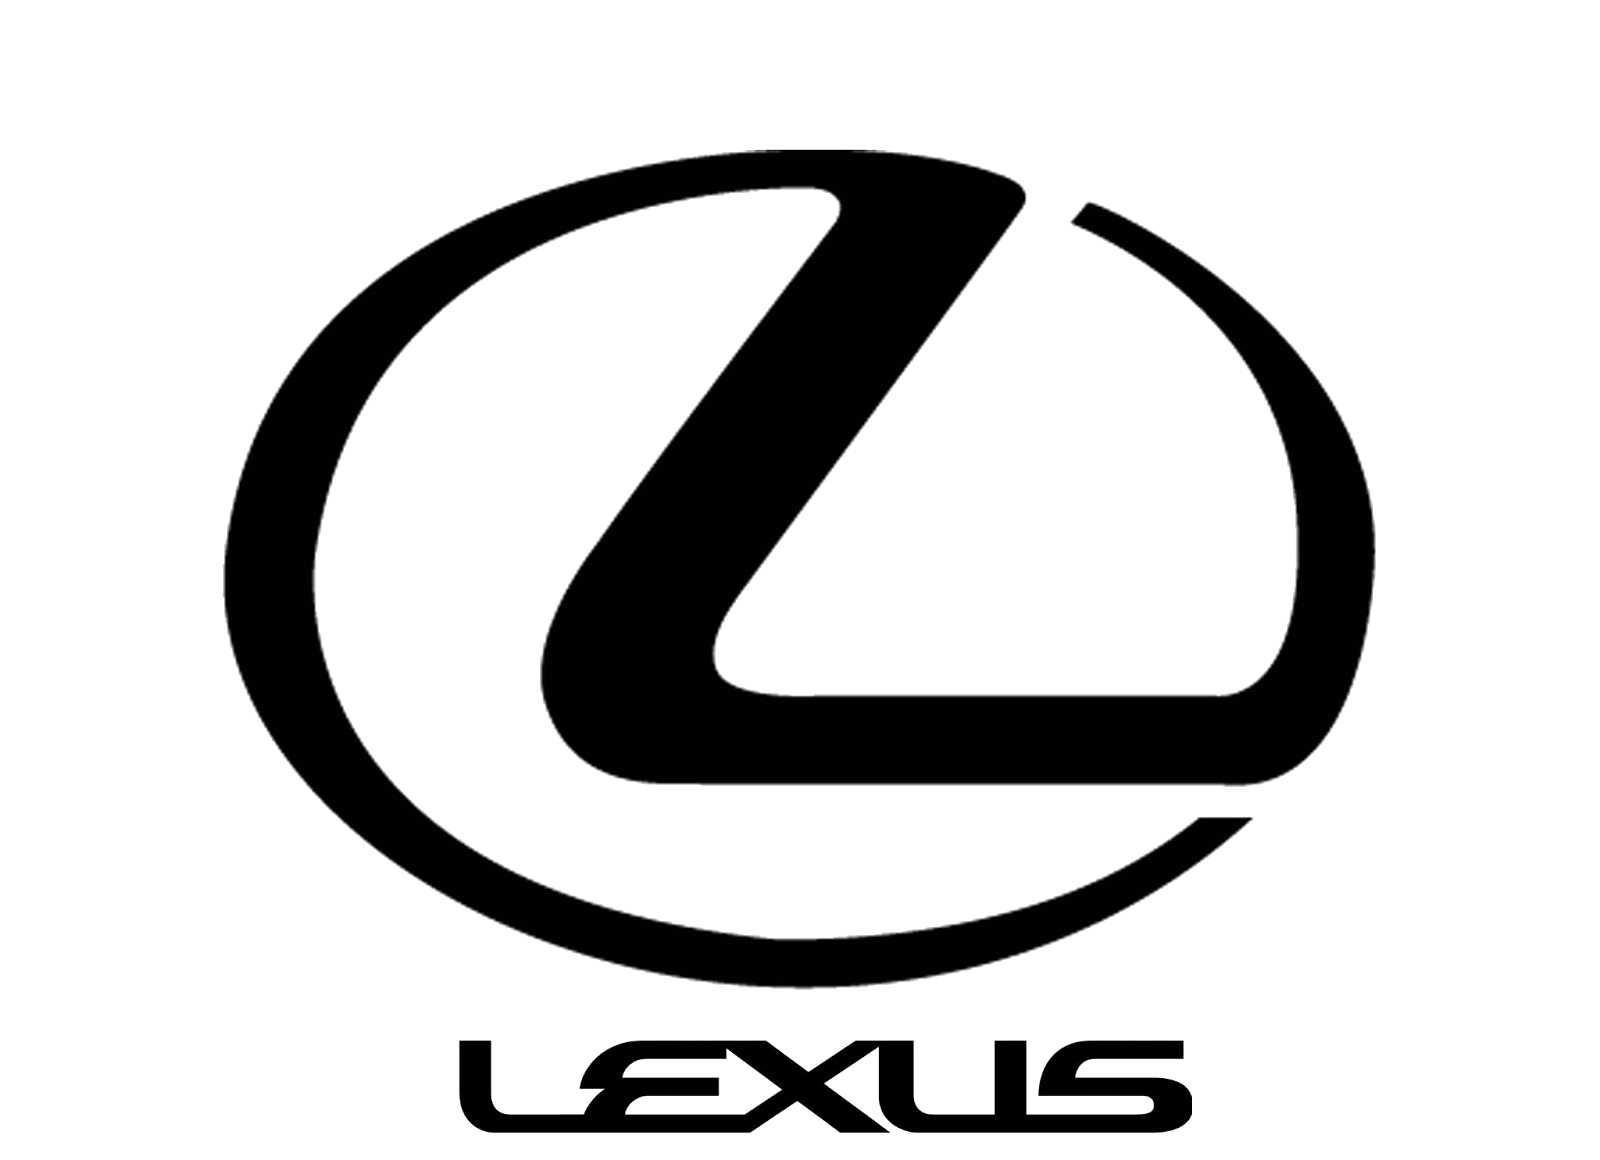 lexus logo.png